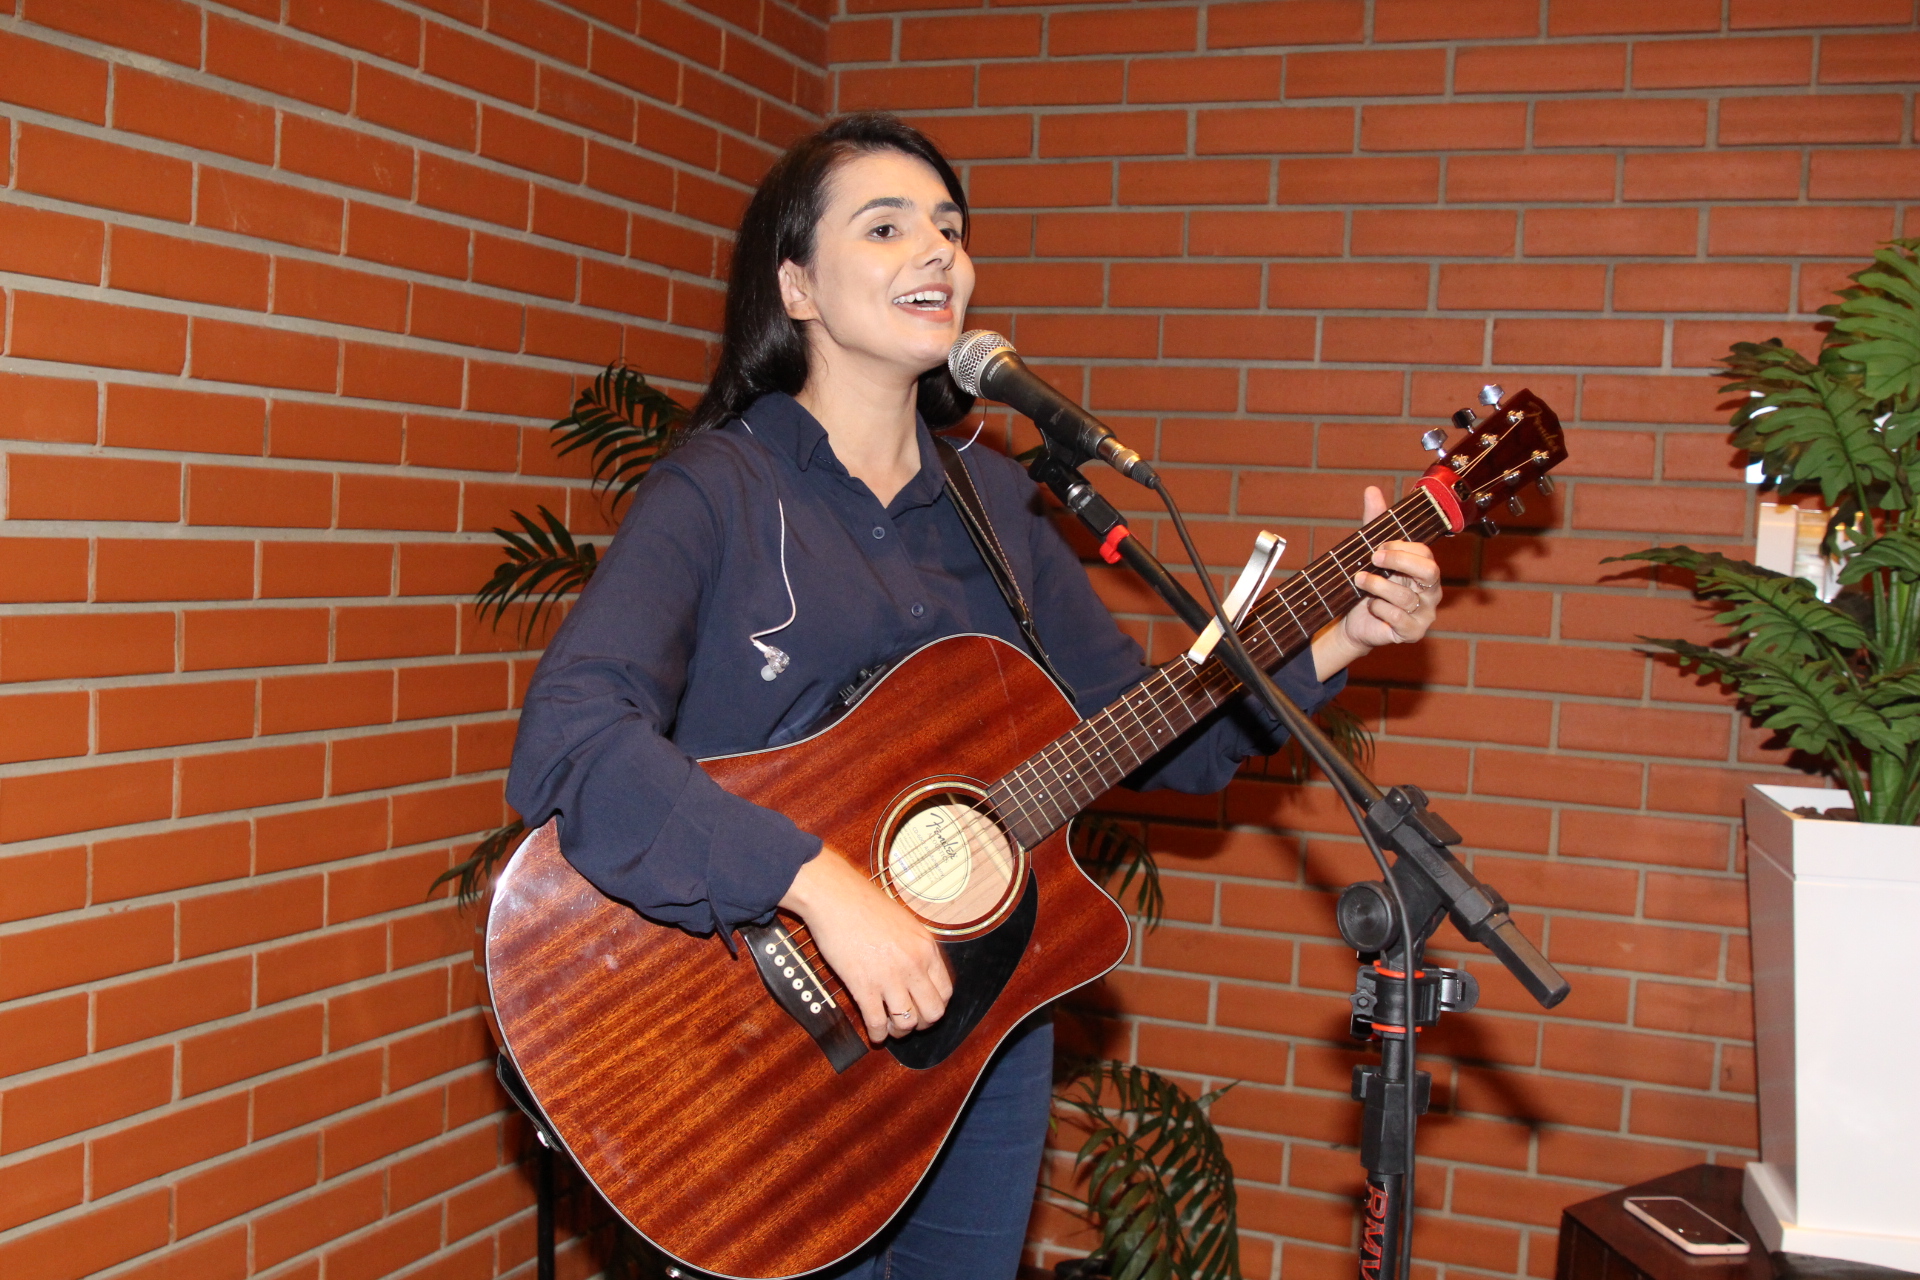 Evento contou com música ao vivo com Naiara Andreatto da Silva    